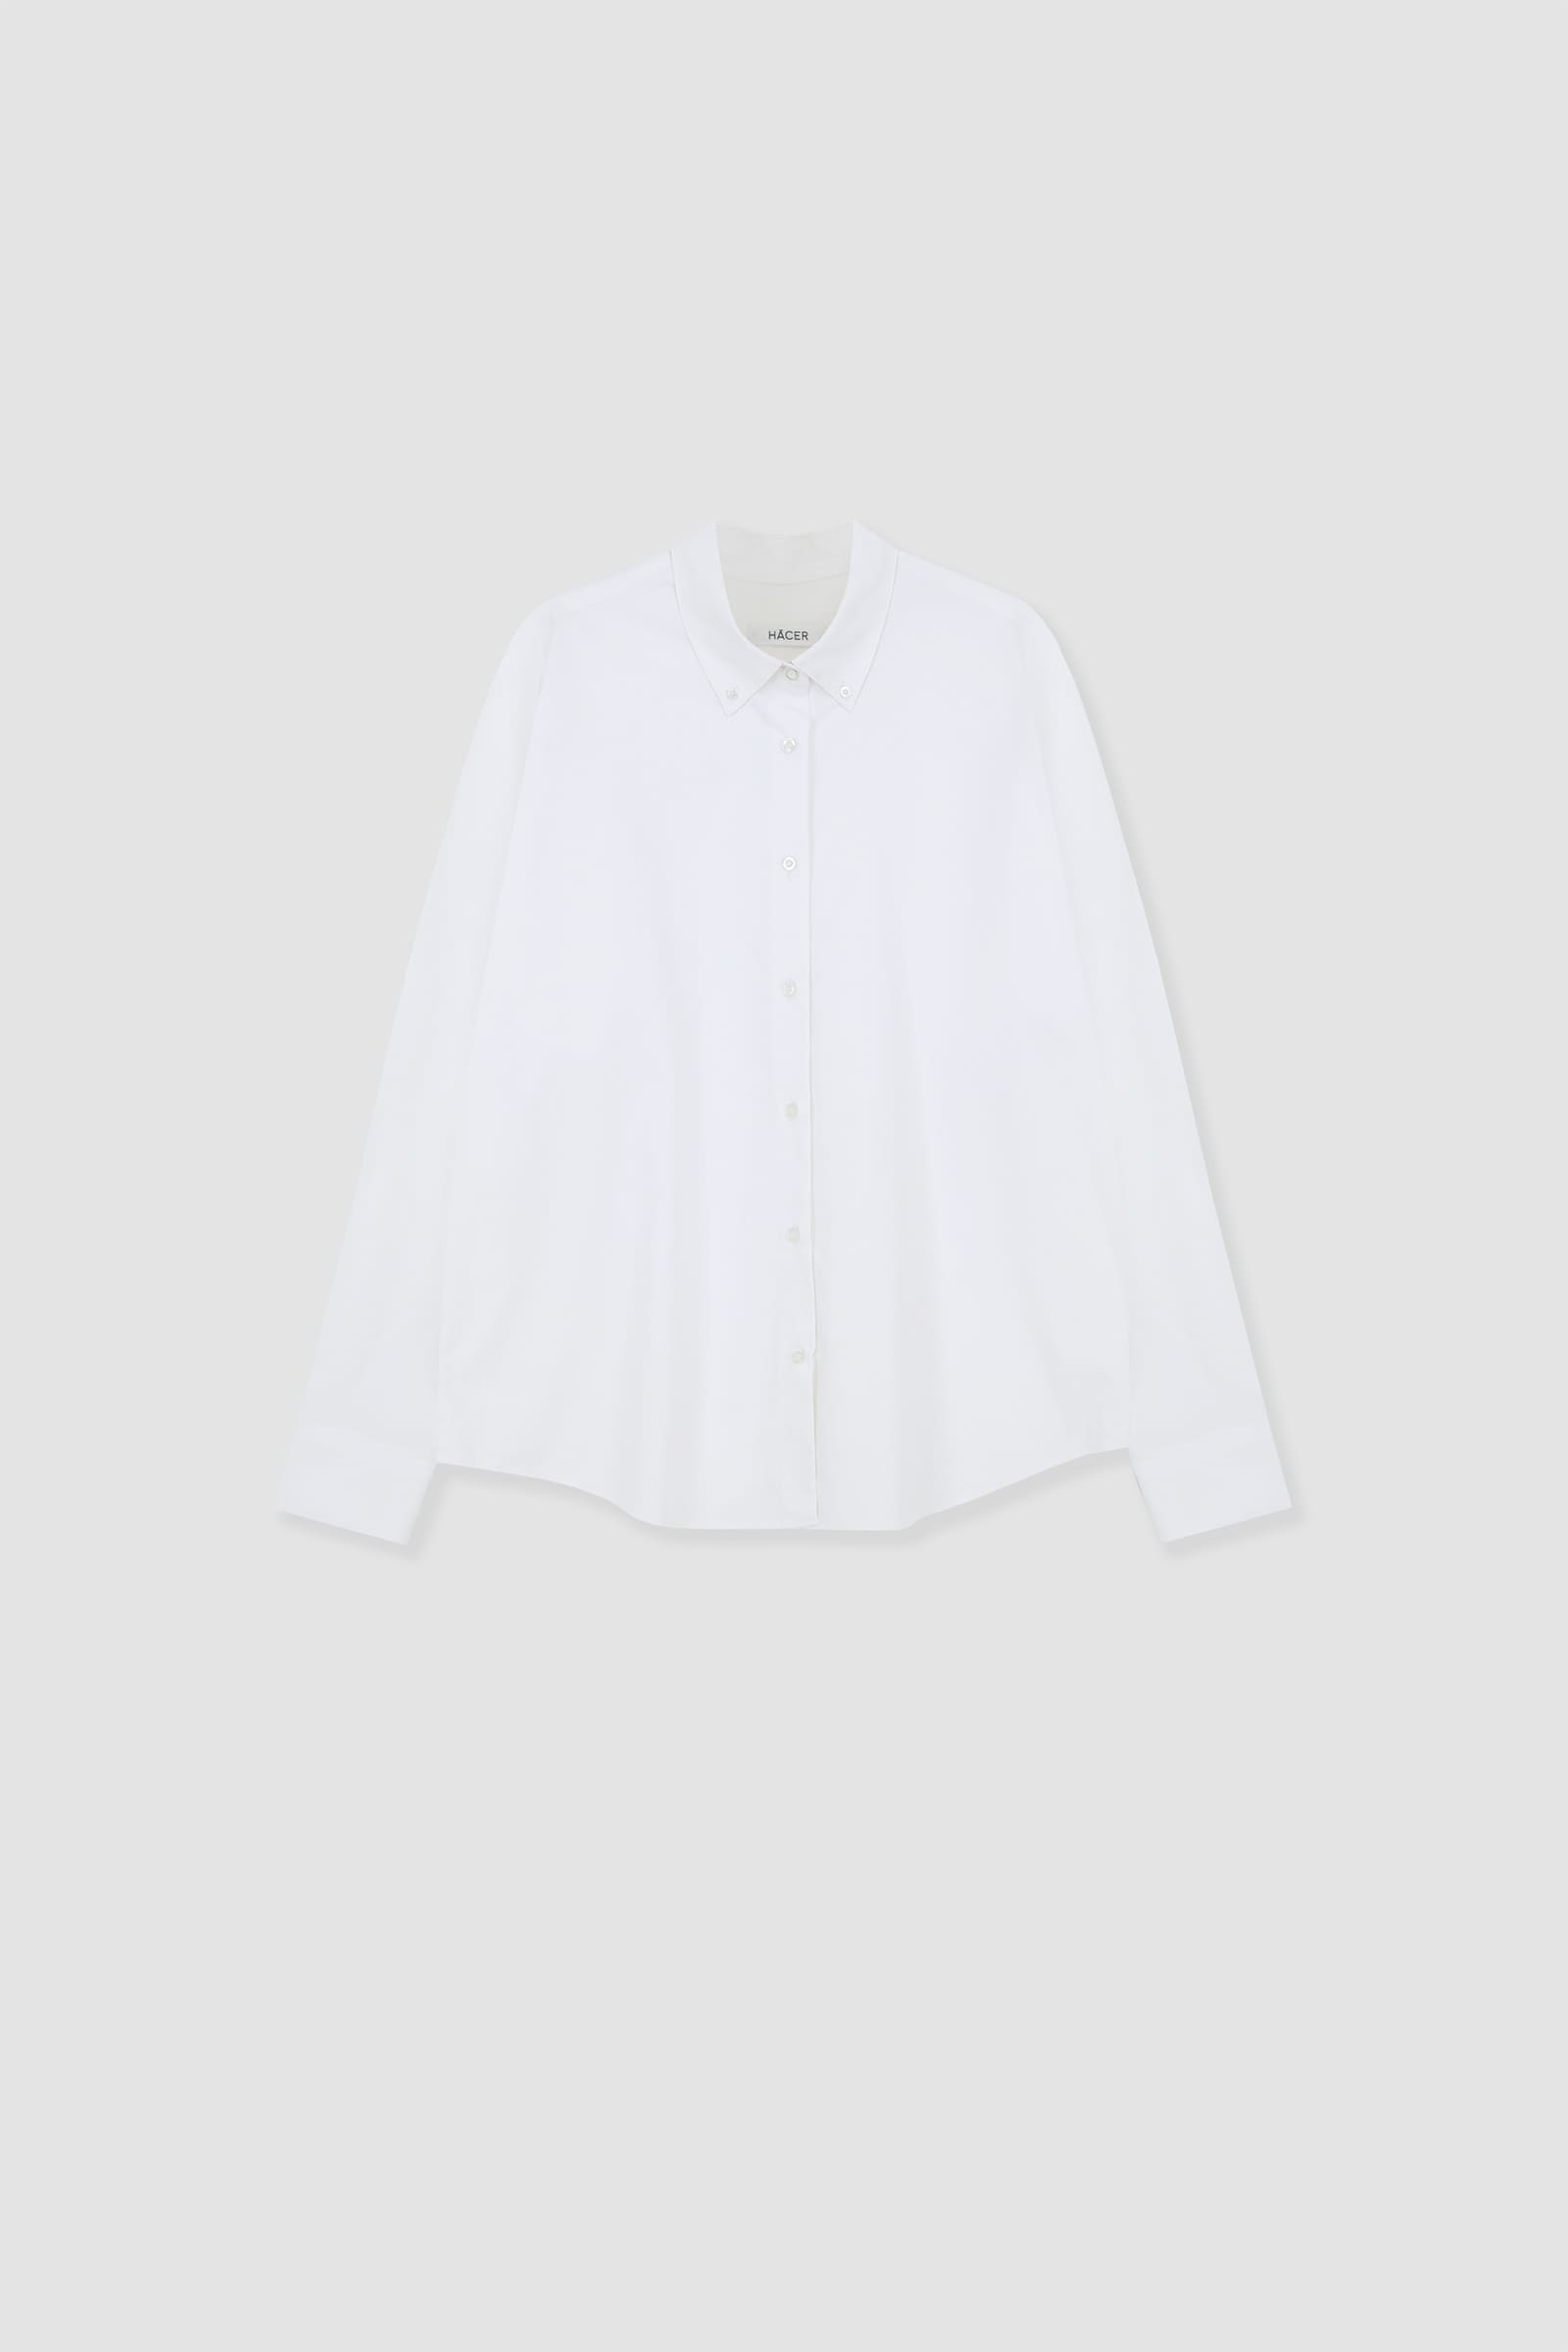 [3rd] Oxford Down Button Shirt